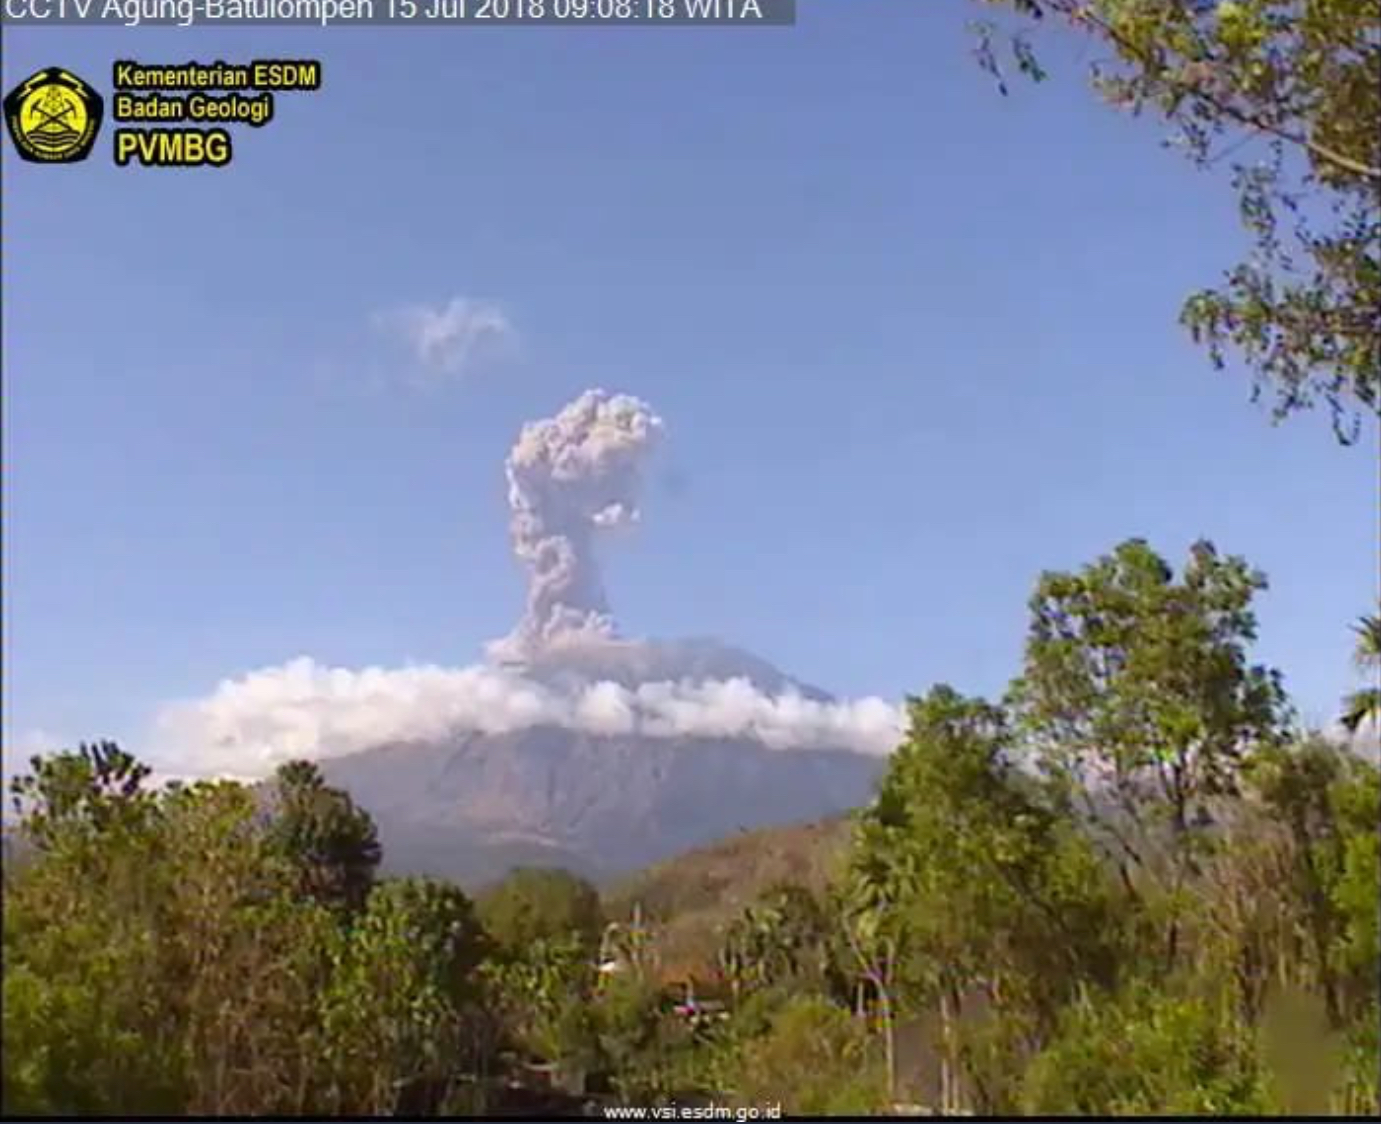 Mount Agung erupting July 15, 2018. Photo: PVMBG